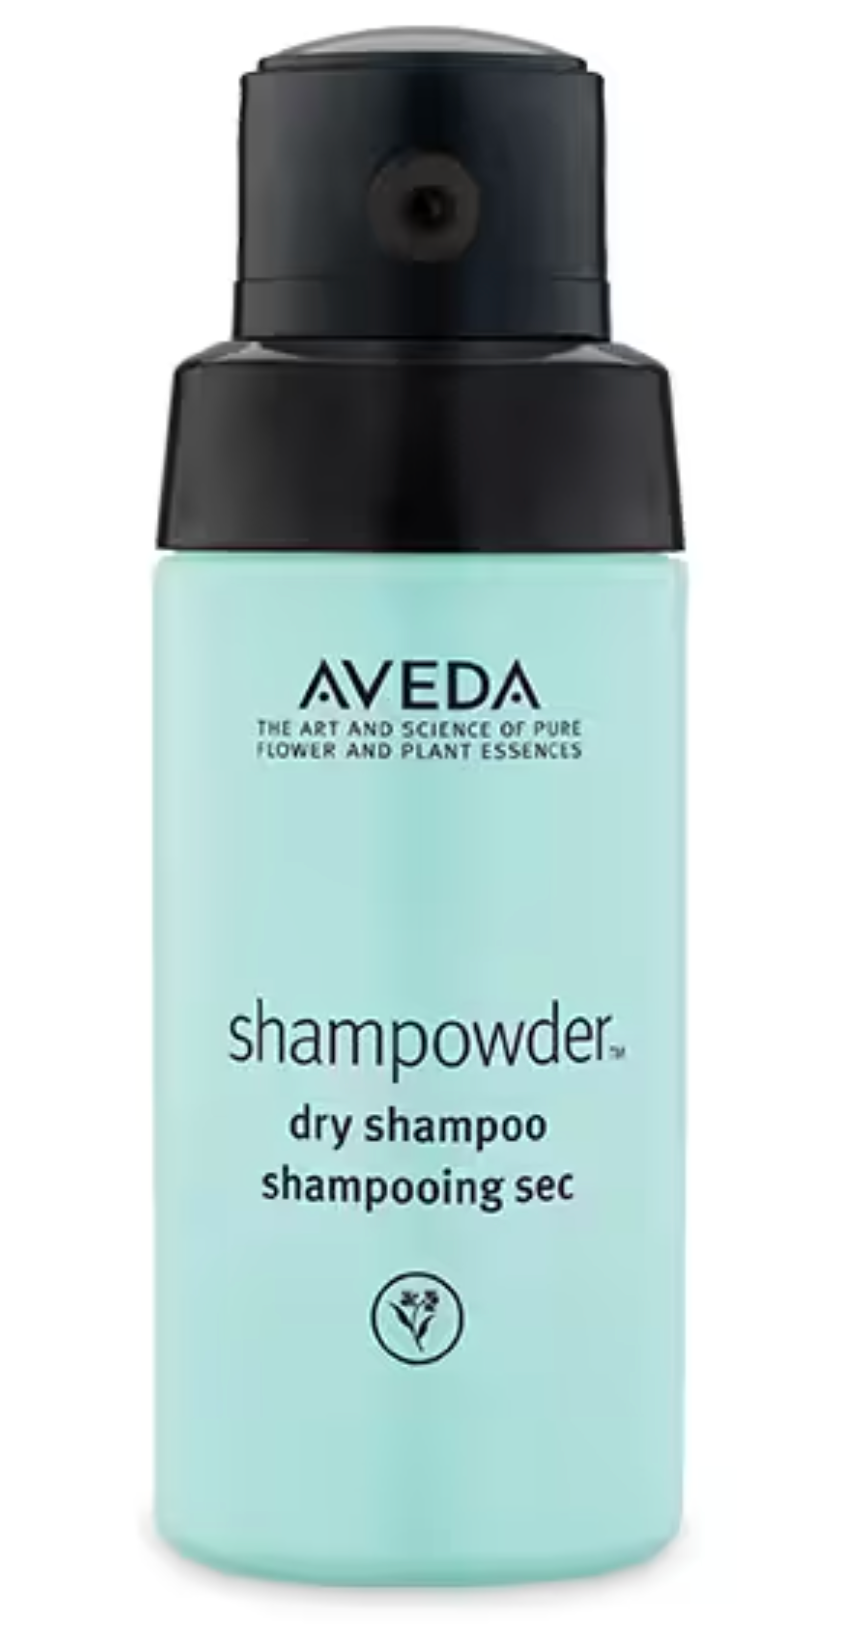 Aveda Dry Shampoo - Shampowder